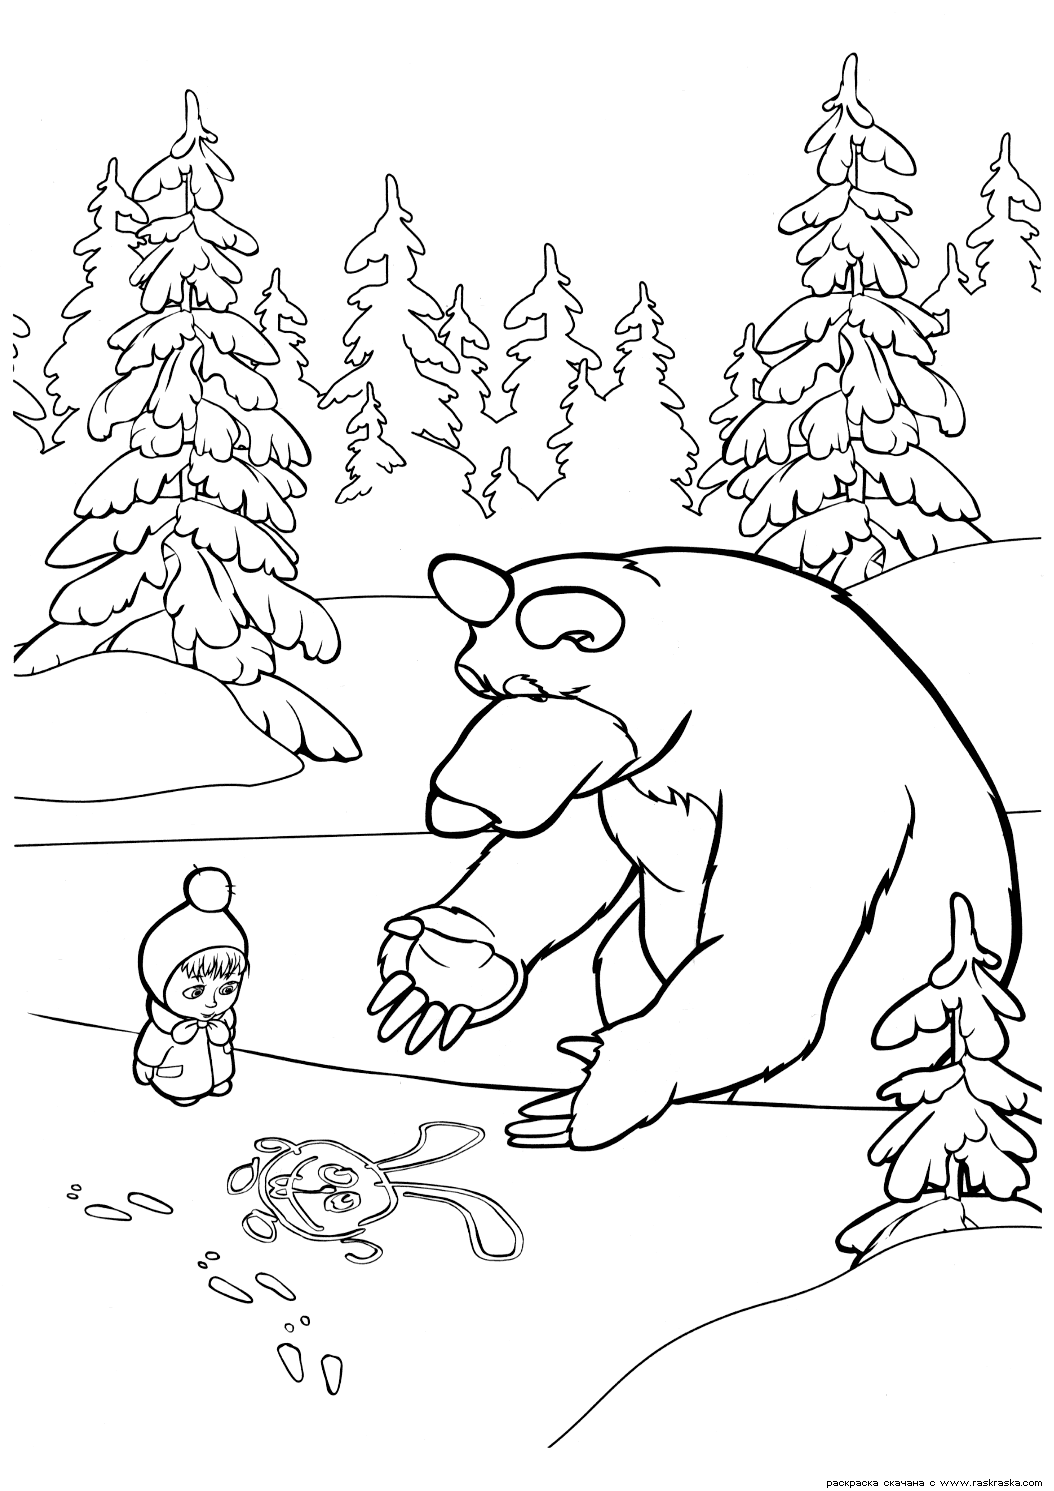 Раскраска зайчик на снегу для Маши из мультфильма Маша и Медведь (зайчик, следы, елки)